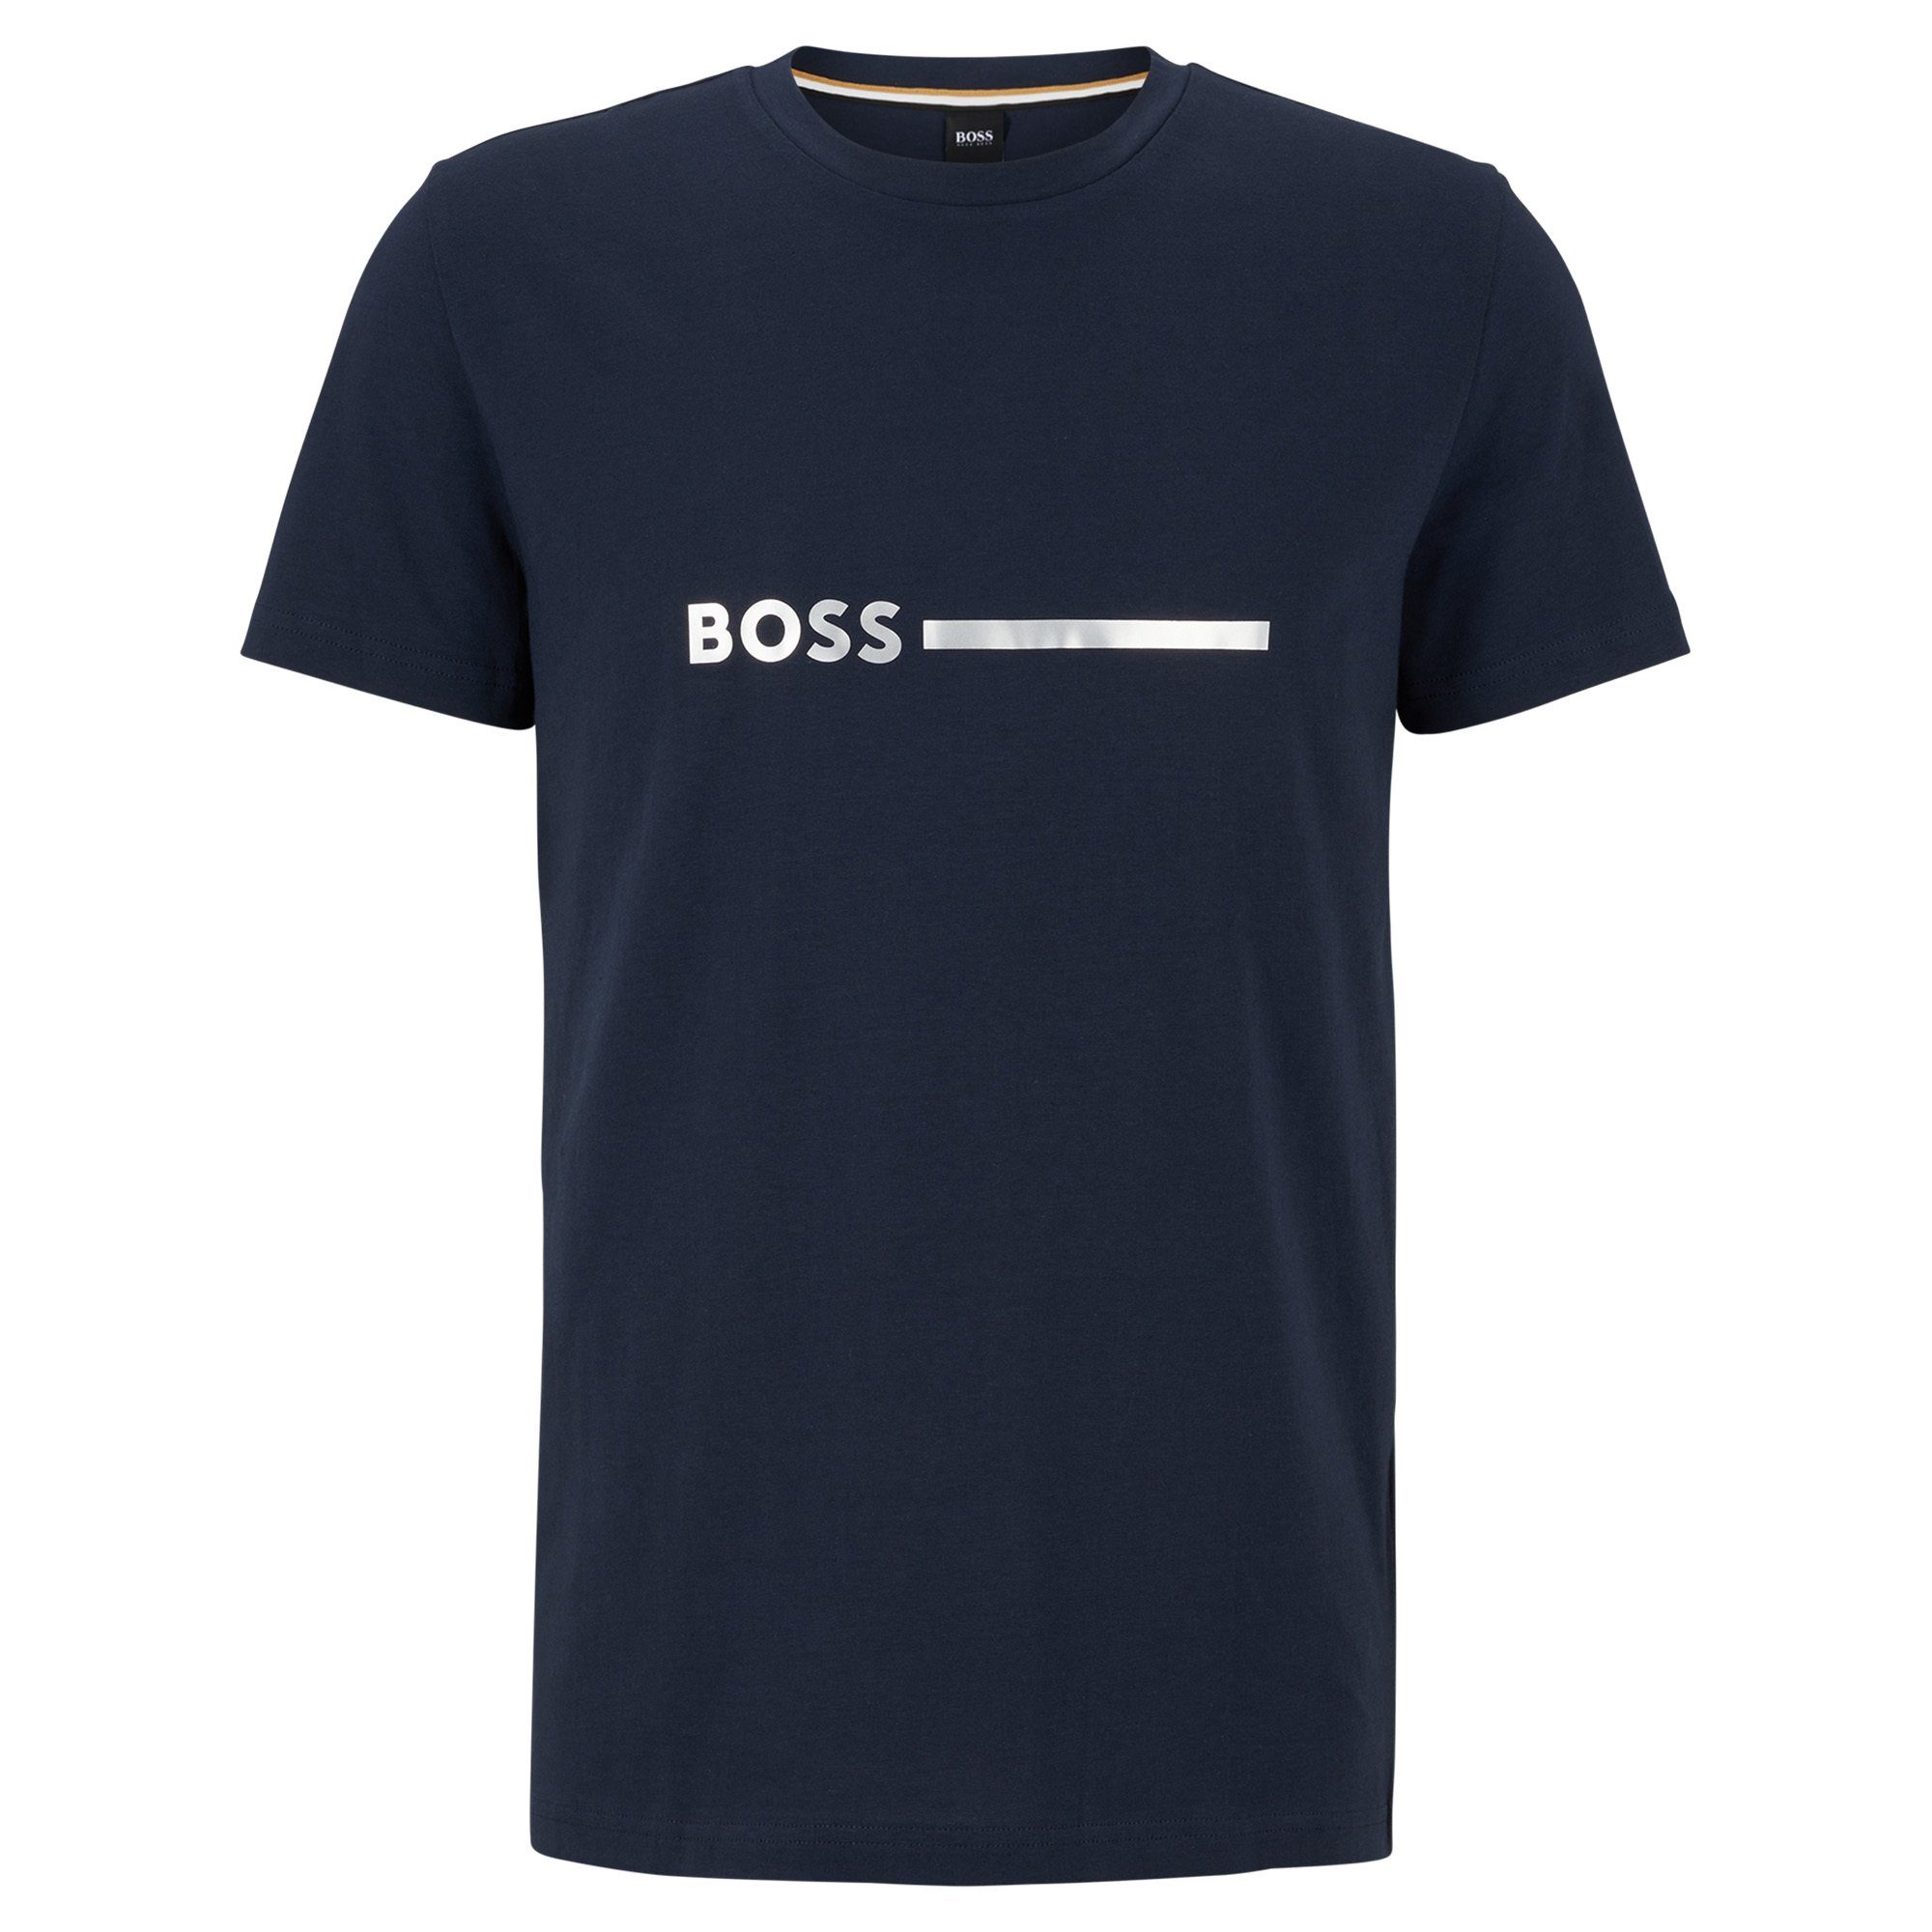 BOSS T-Shirt Herren T-Shirt Kurzarm Dunkelblau - Rundhals, Special